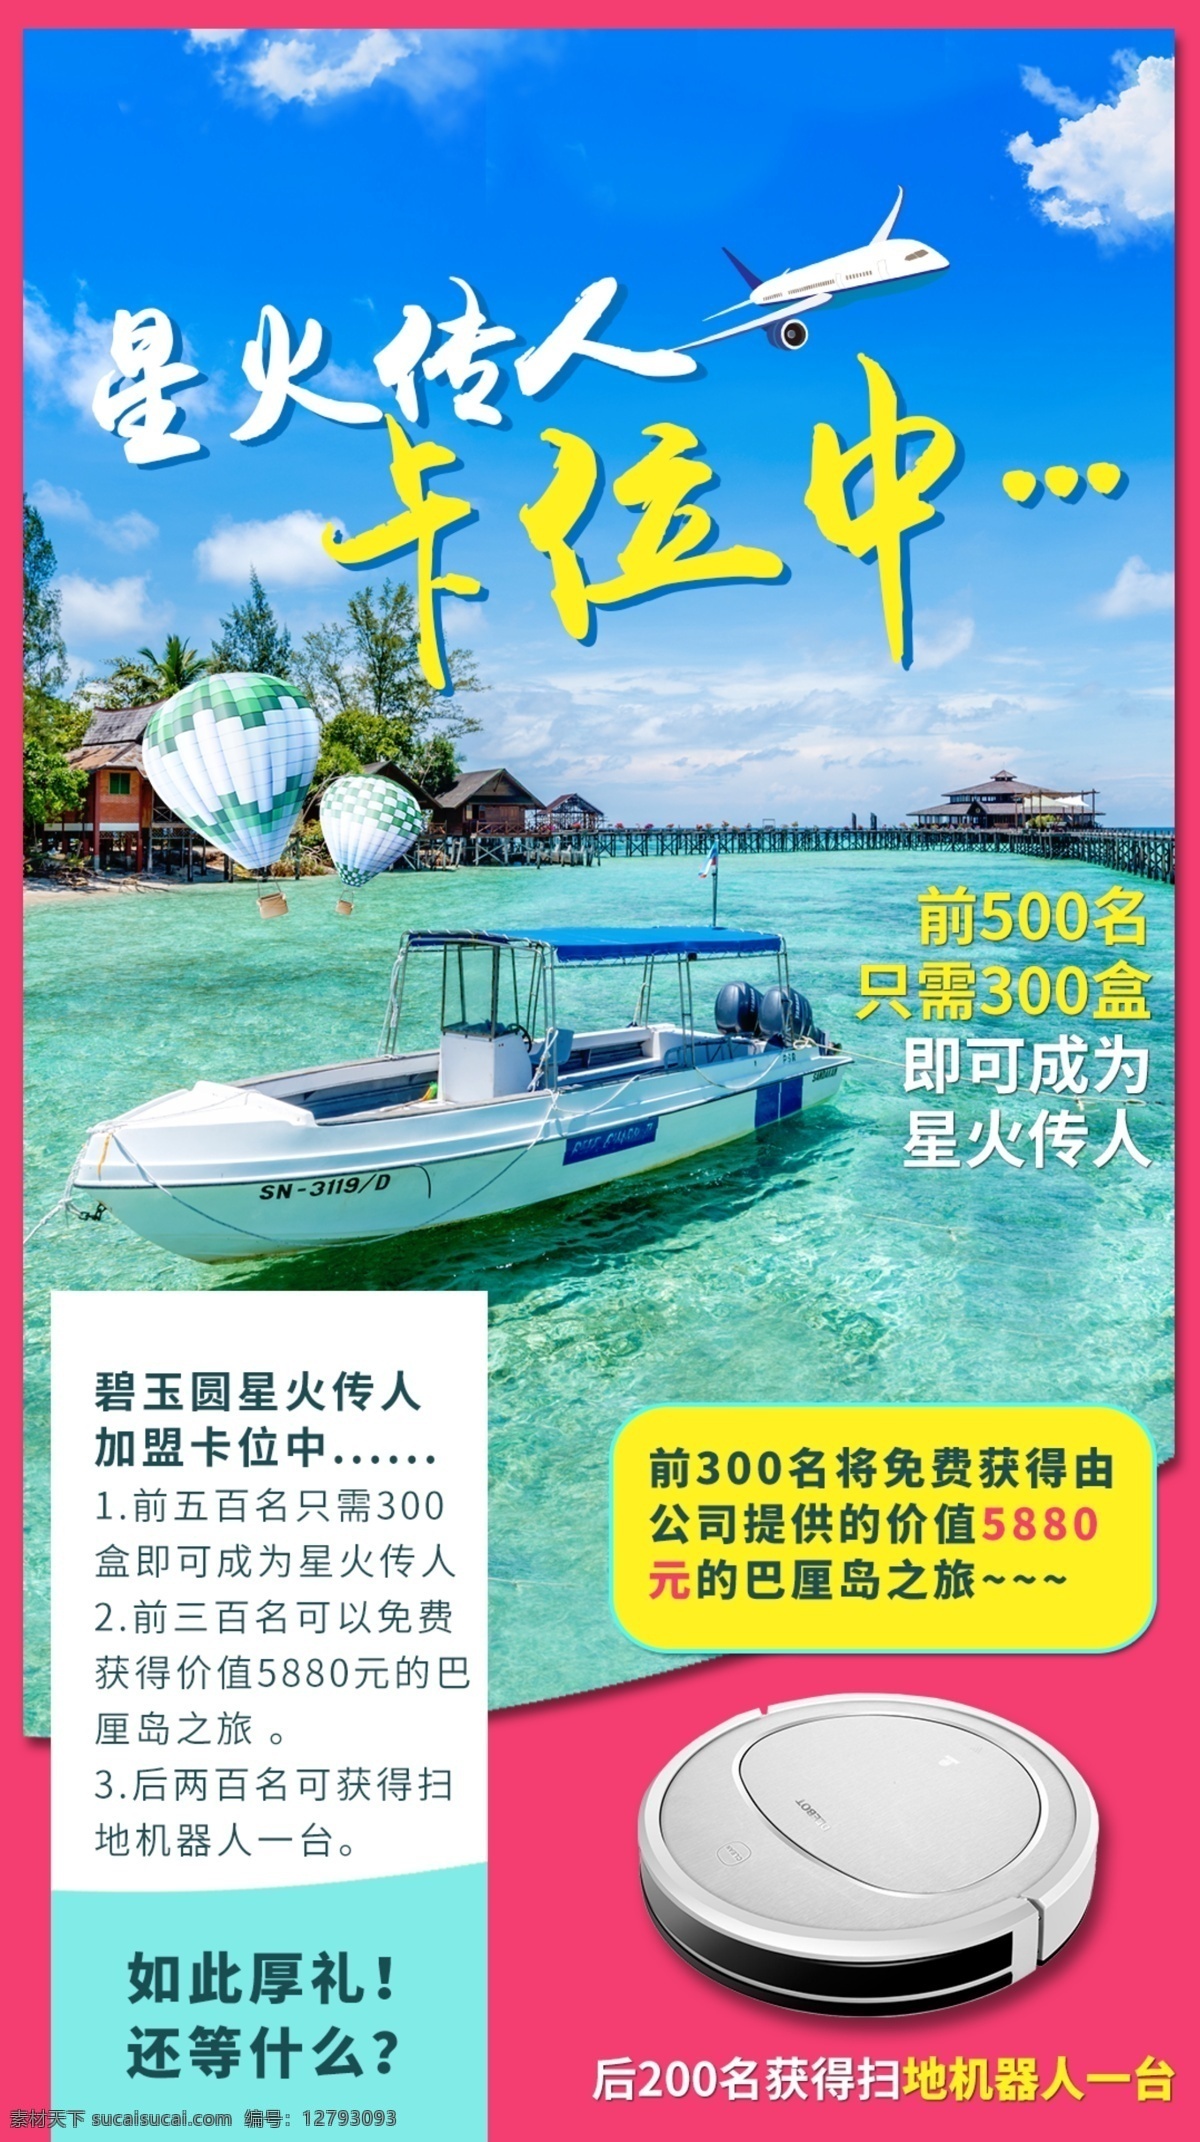 巴厘岛 活动 海报 旅游 报名 扫地机 抢占 卡位 福利 优惠 游艇 飞机